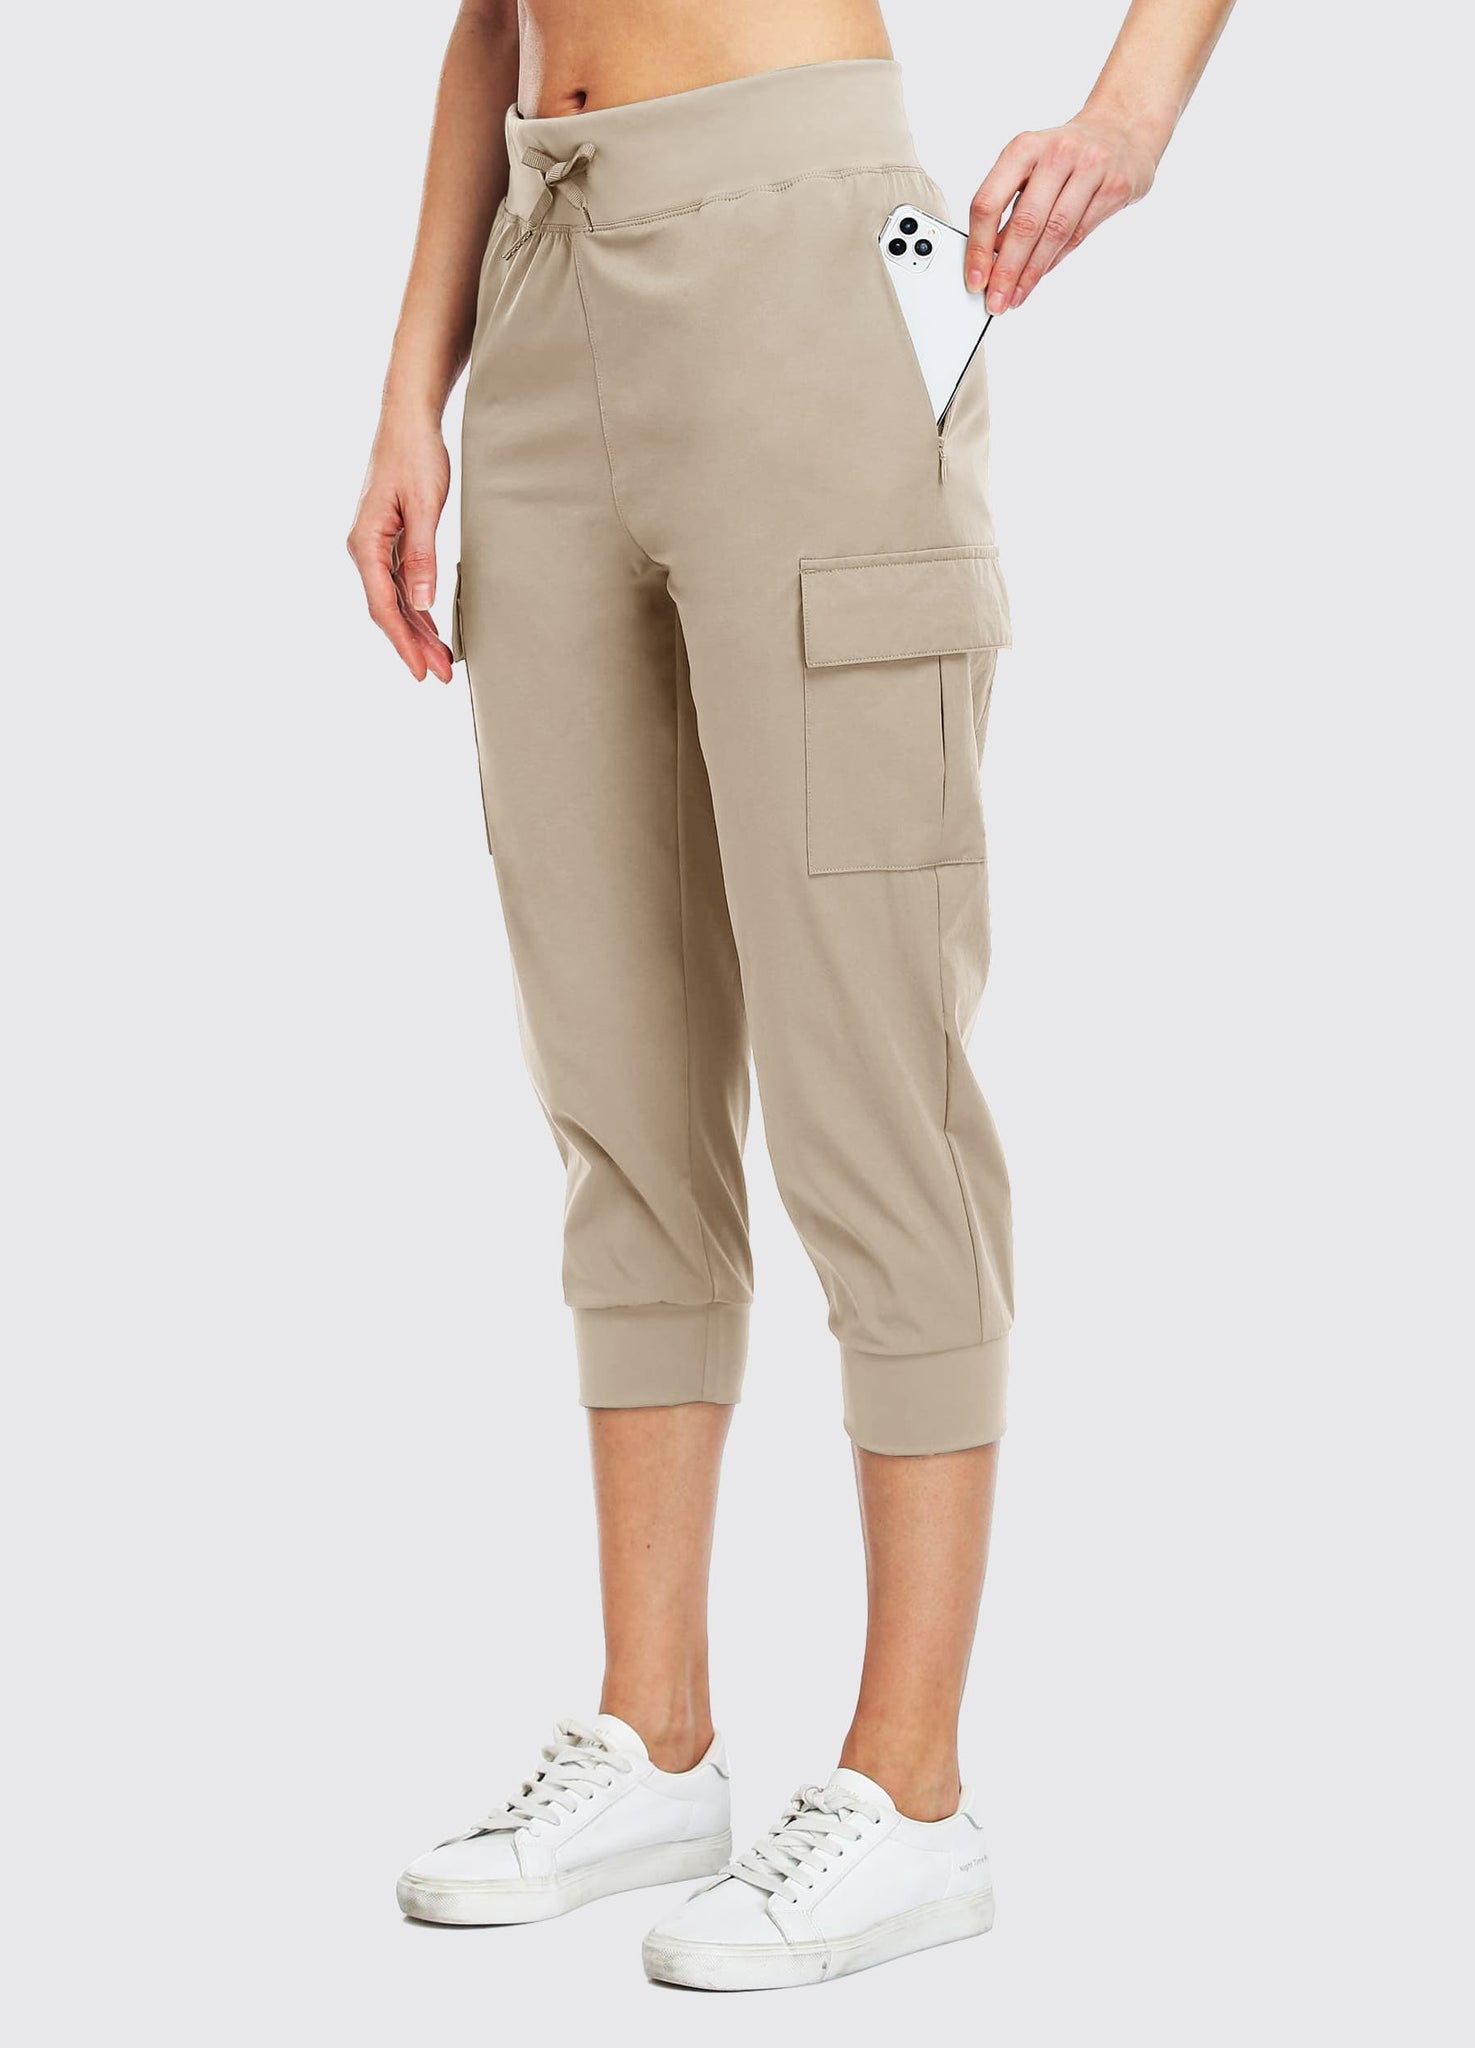 Toomett Women's Hiking Cargo Pants Convertible Quick Dry UPF50+ Waterproof  Capri Fishing Safari Travel Pants